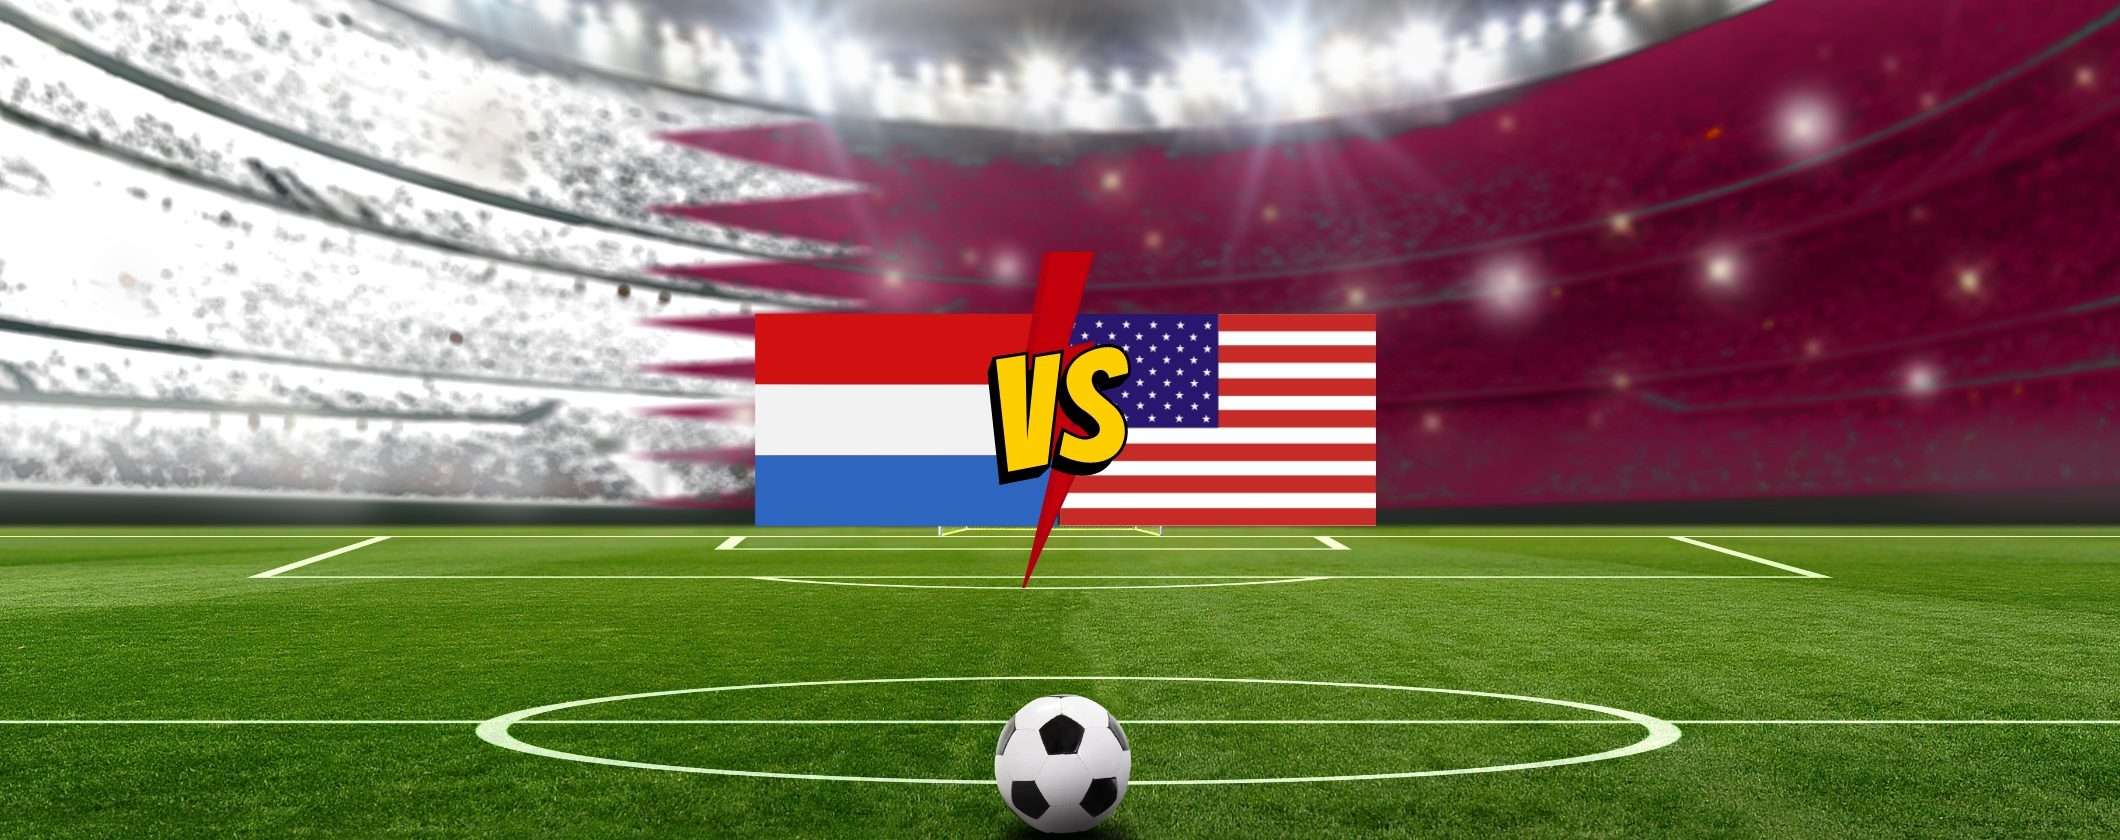 Come vedere Olanda-Stati Uniti dall'estero in streaming